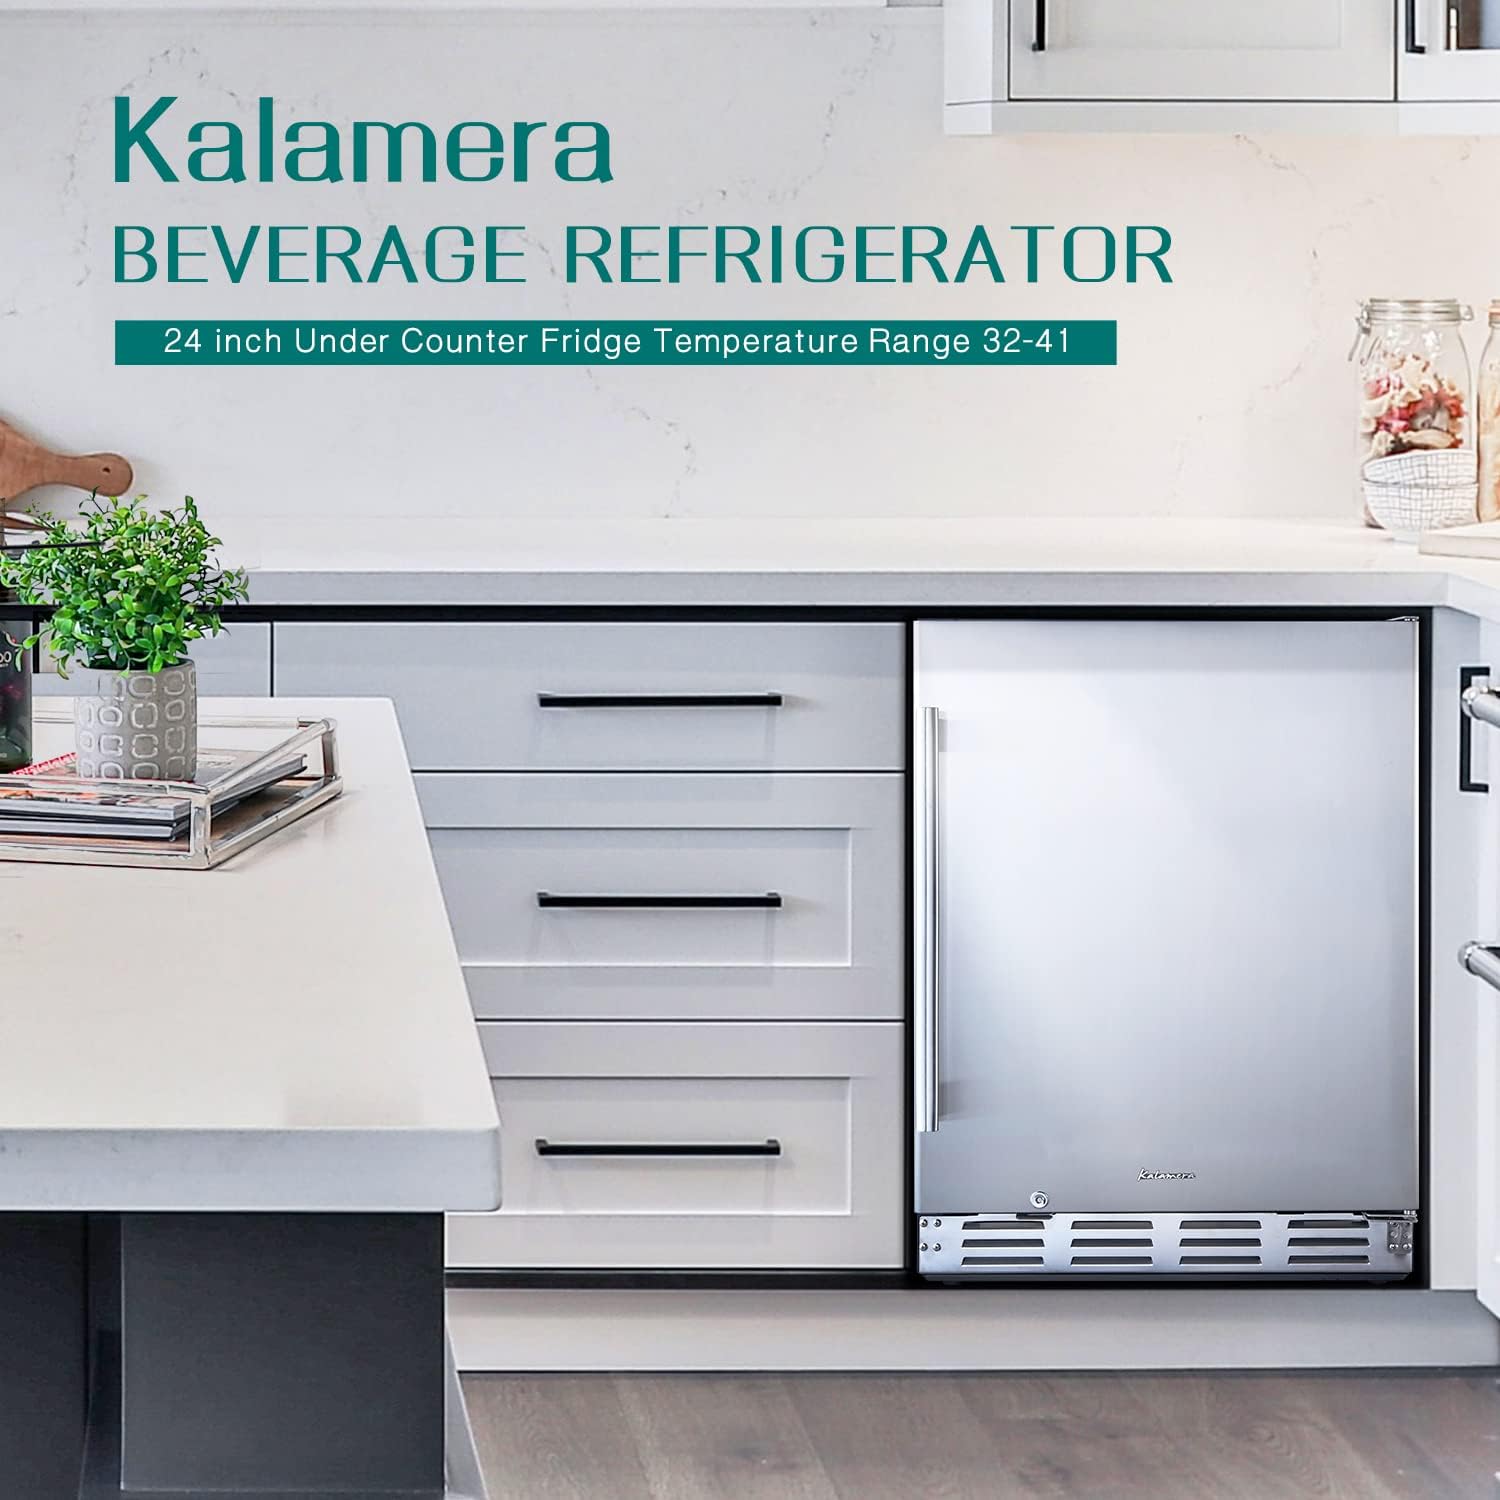 Kalamera Beverage Refrigerator, 24 inch Under Counter Beverage Cooler for 154 Cans - $480